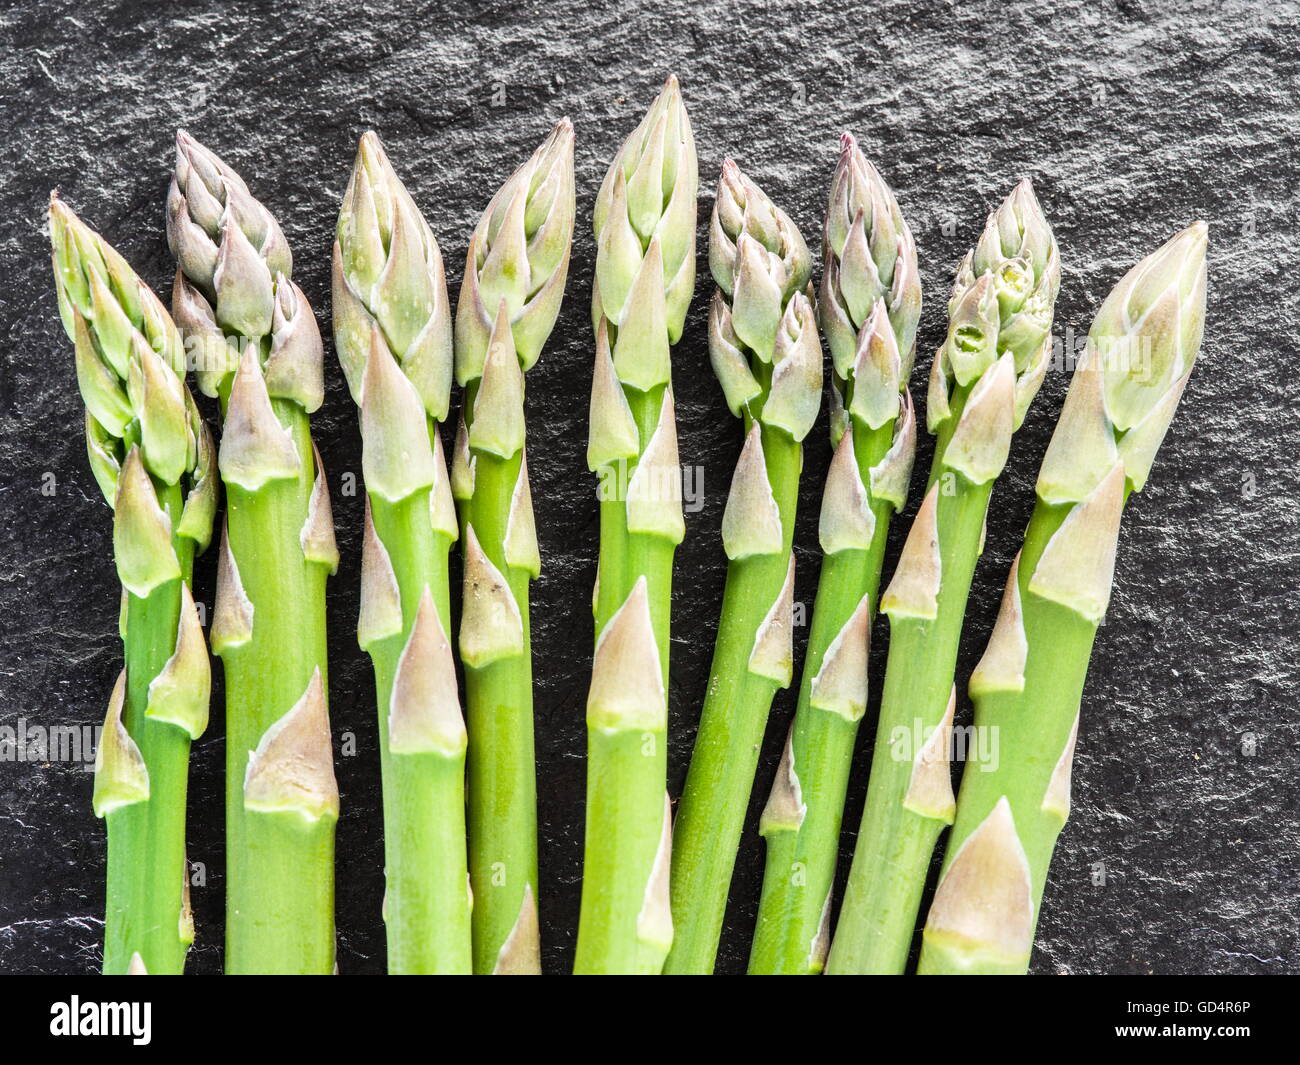 Green giovani germogli di asparagi su sfondo nero. Foto Stock